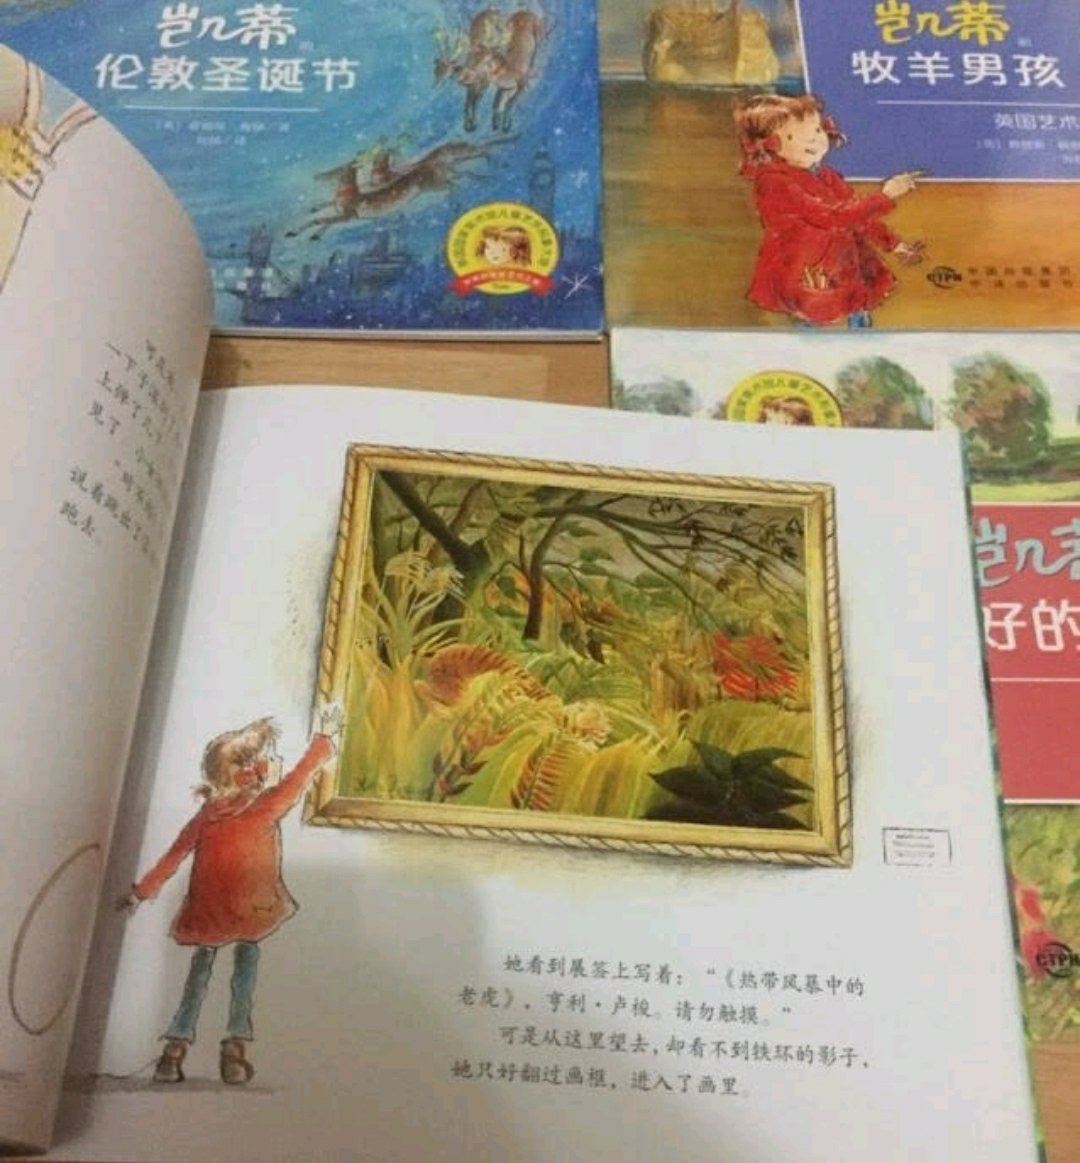 嘿嘿，有趣的。写国外的历史名画，写活了。虽然画名和作者依旧记不住，但是不妨碍孩子了解名画啊。希望中国能有这样的书，了解中国的名画。